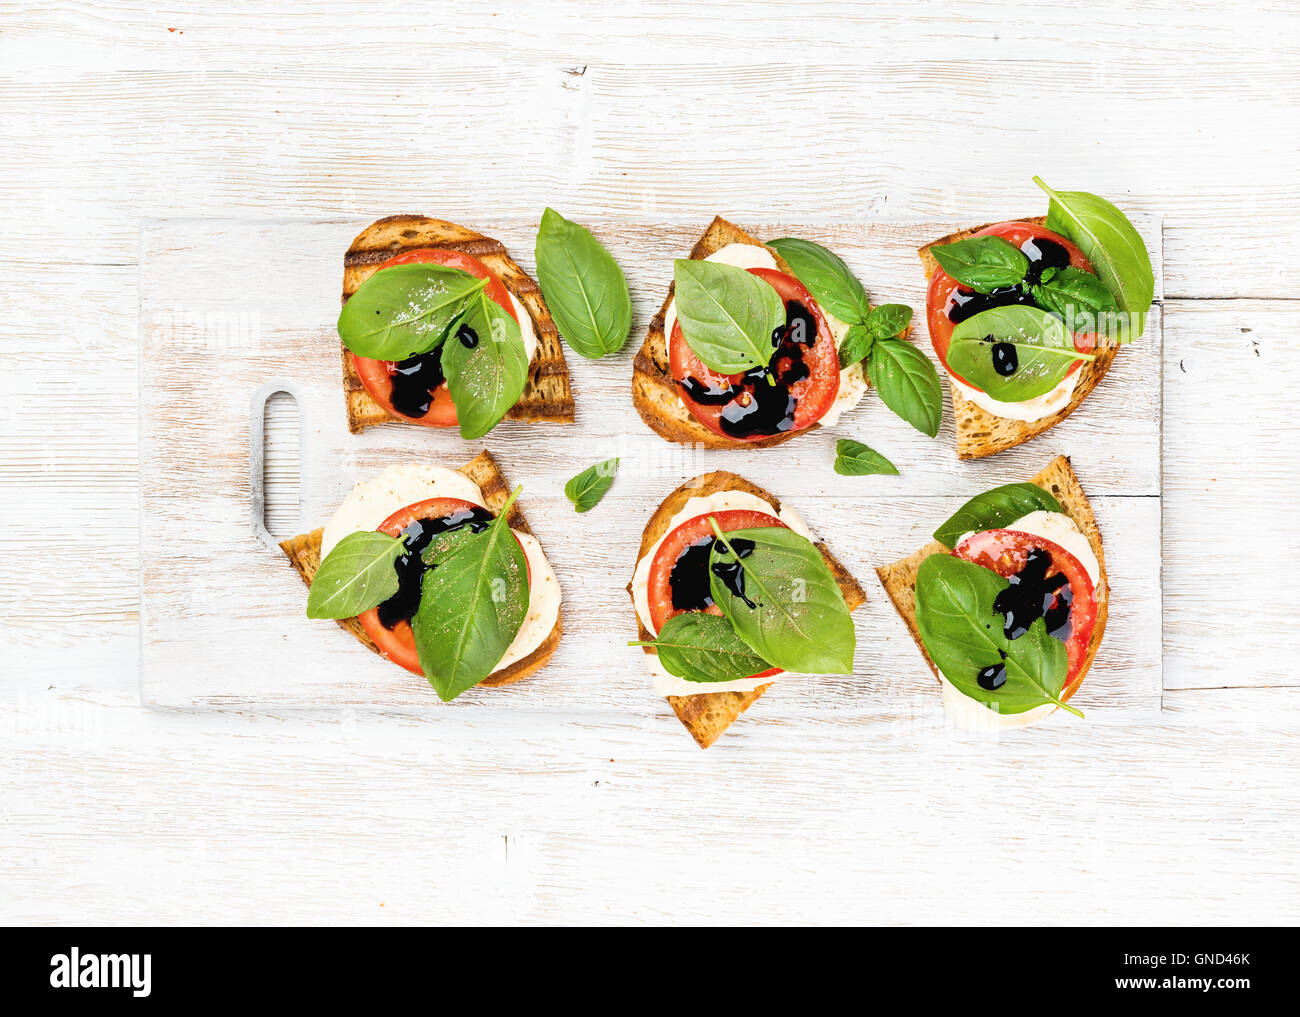 Caprese-Sandwiches mit Tomaten, Mozzarella, Basilikum und Balsamico-Glasur auf weißem lackiertem Holz Hintergrund Stockfoto